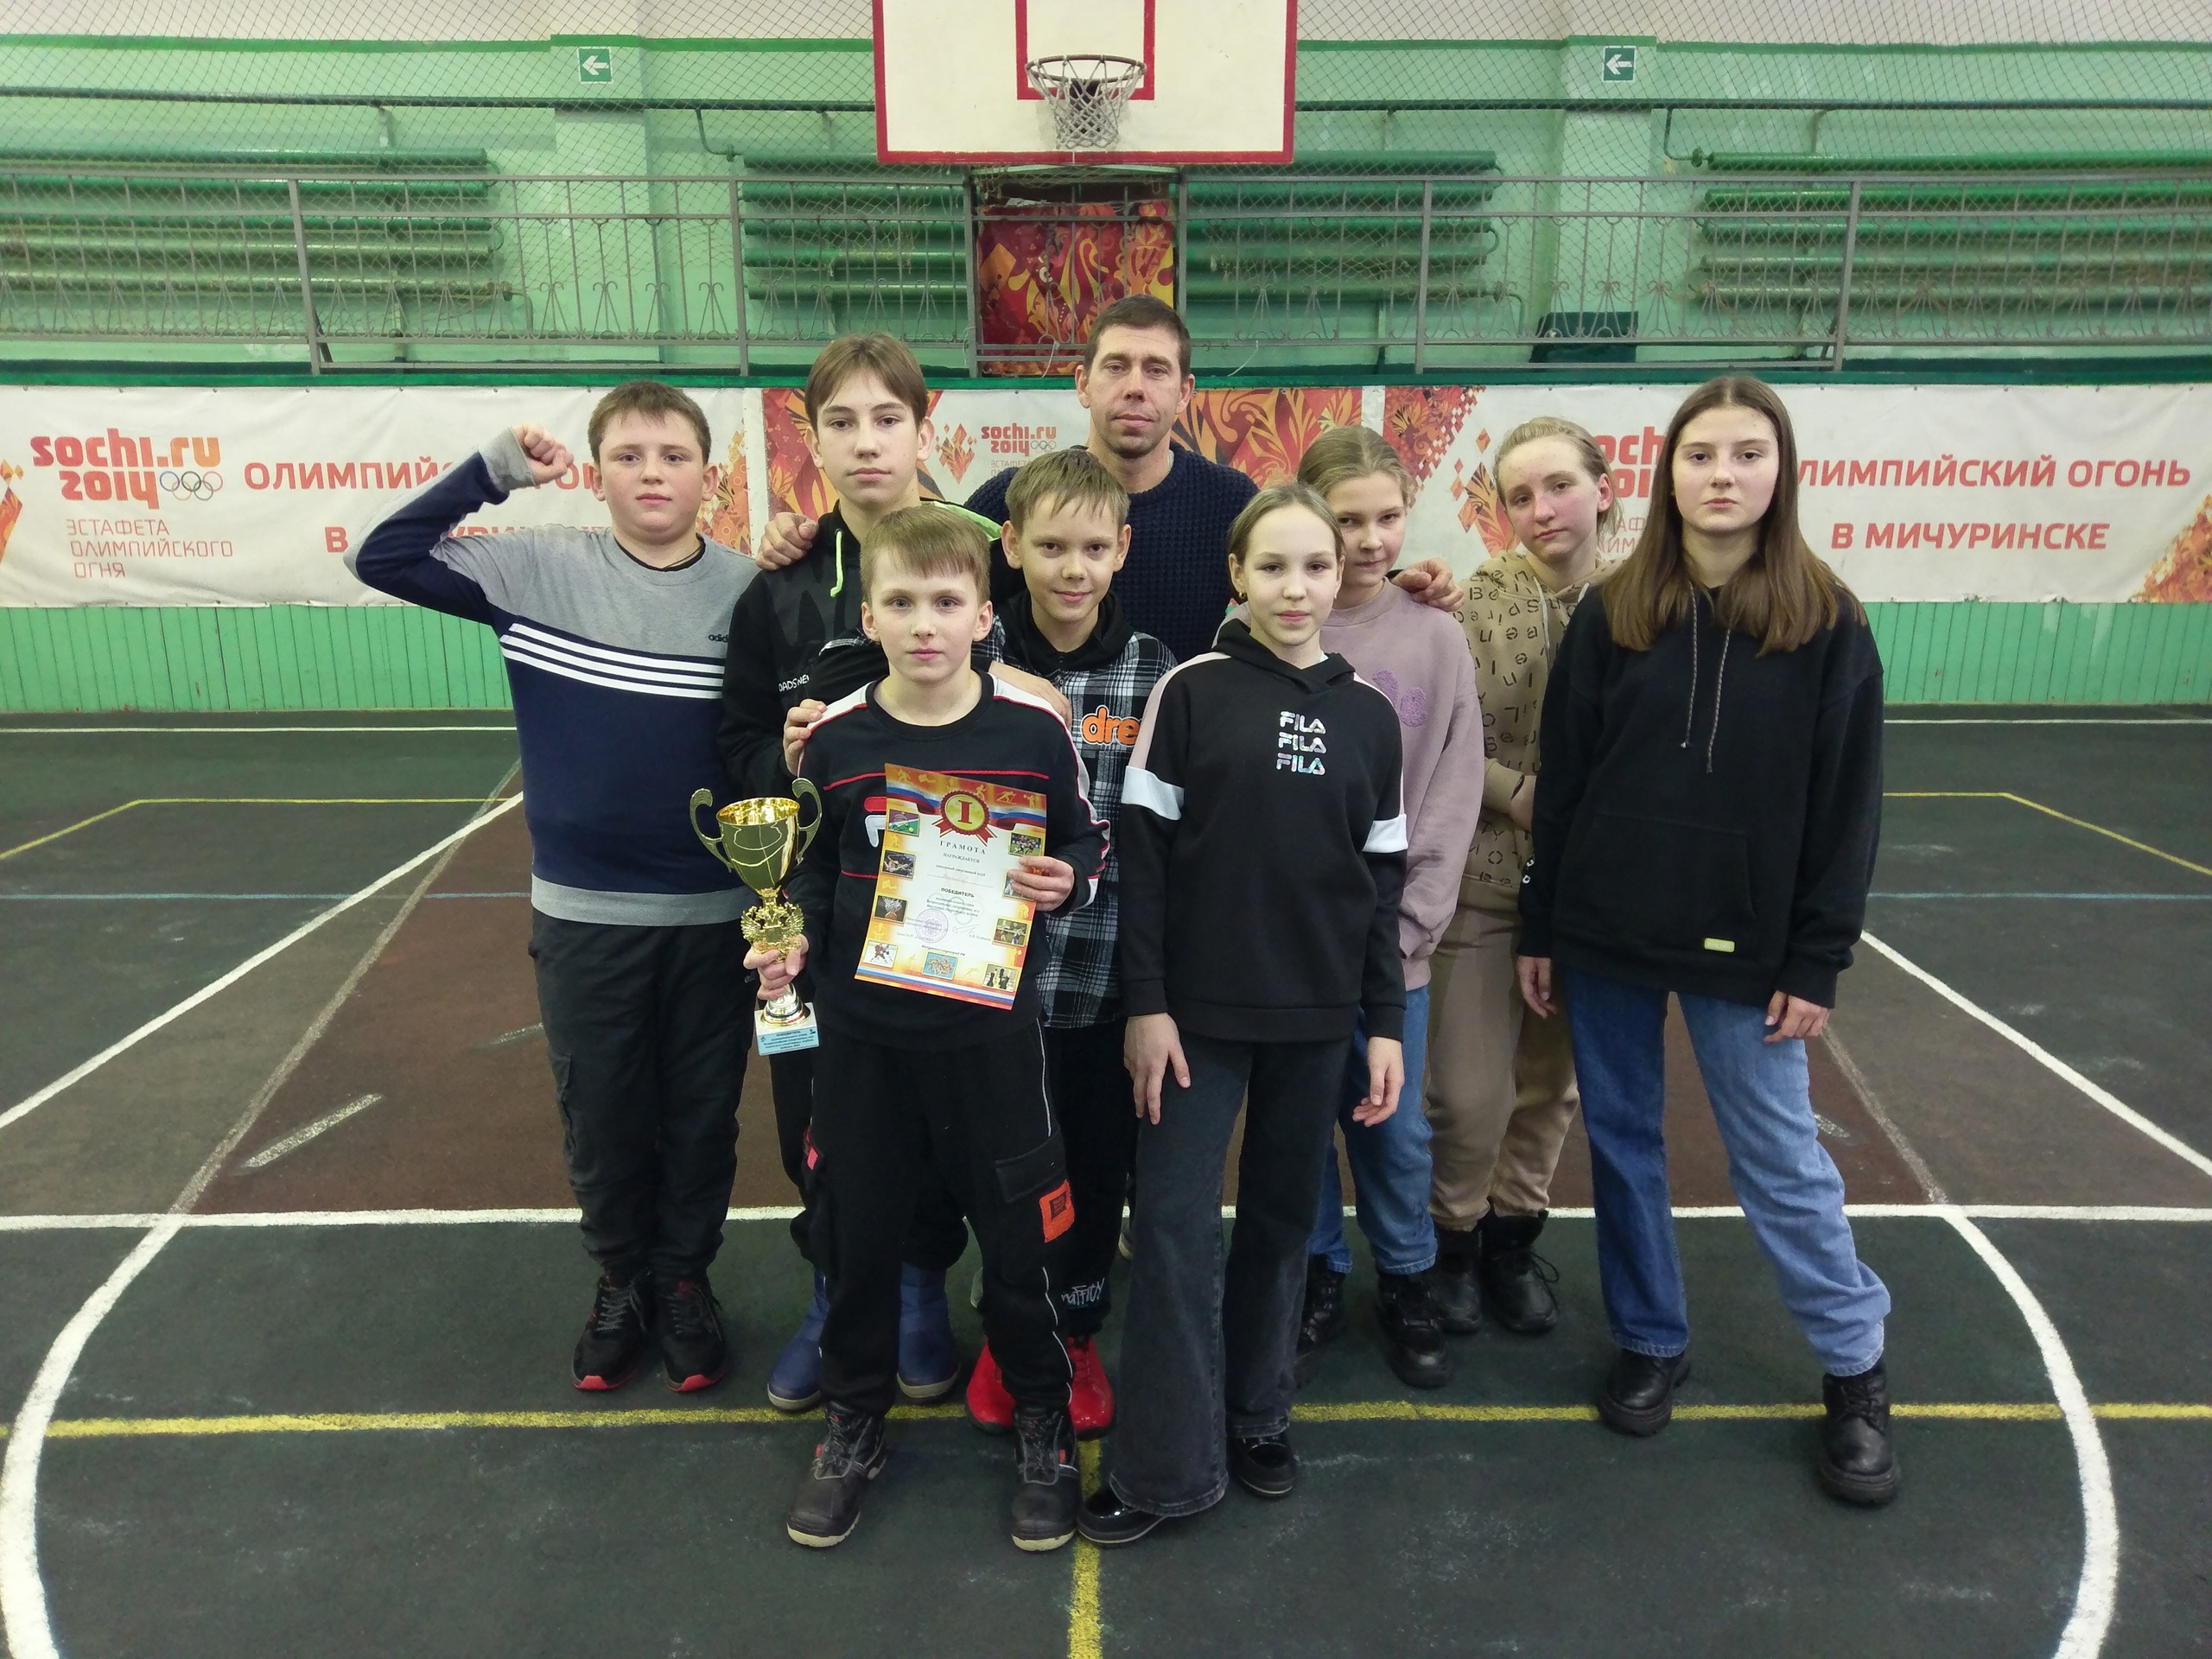 Определились победители и призеры муниципального этапа Всероссийских спортивных игр.